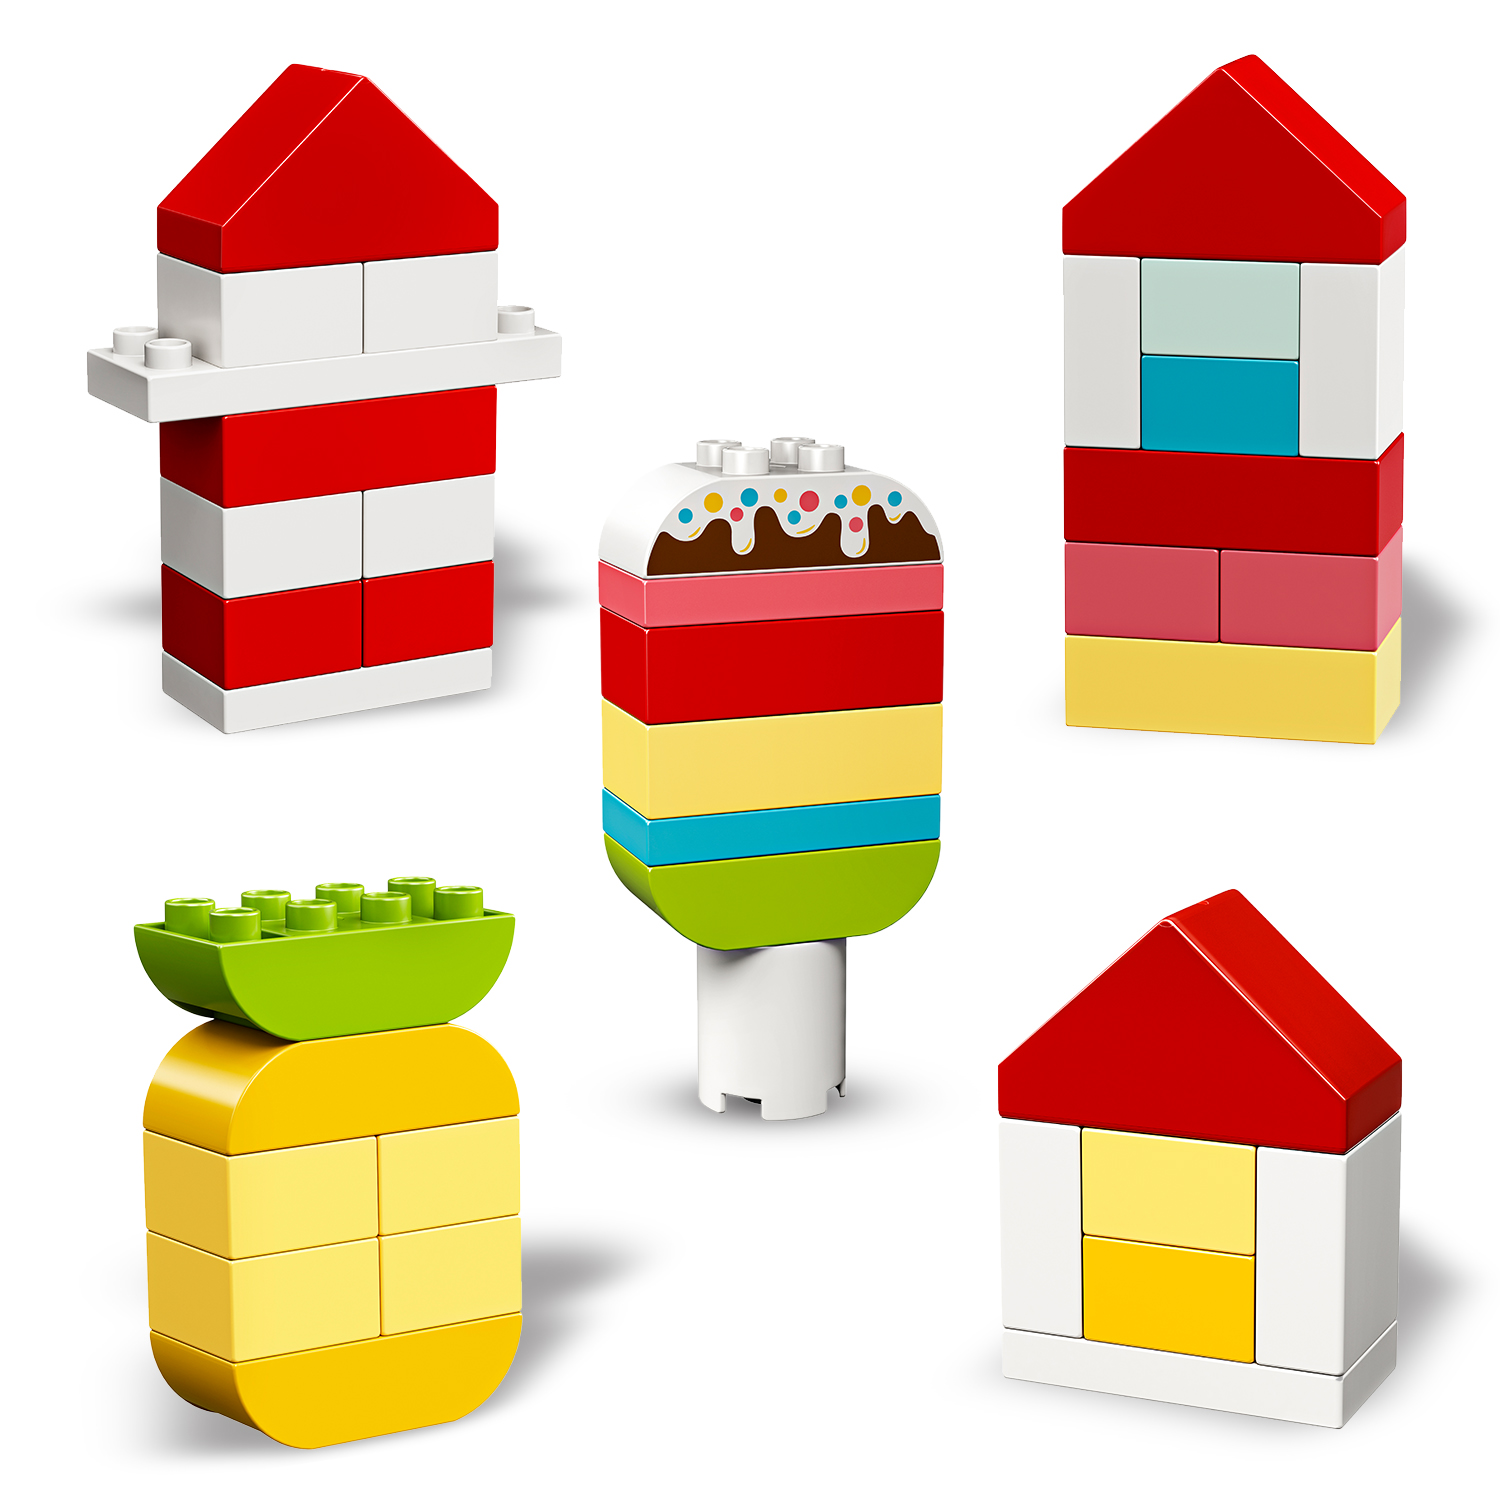 Scatola cuore - 10909 - LEGO DUPLO, Lego